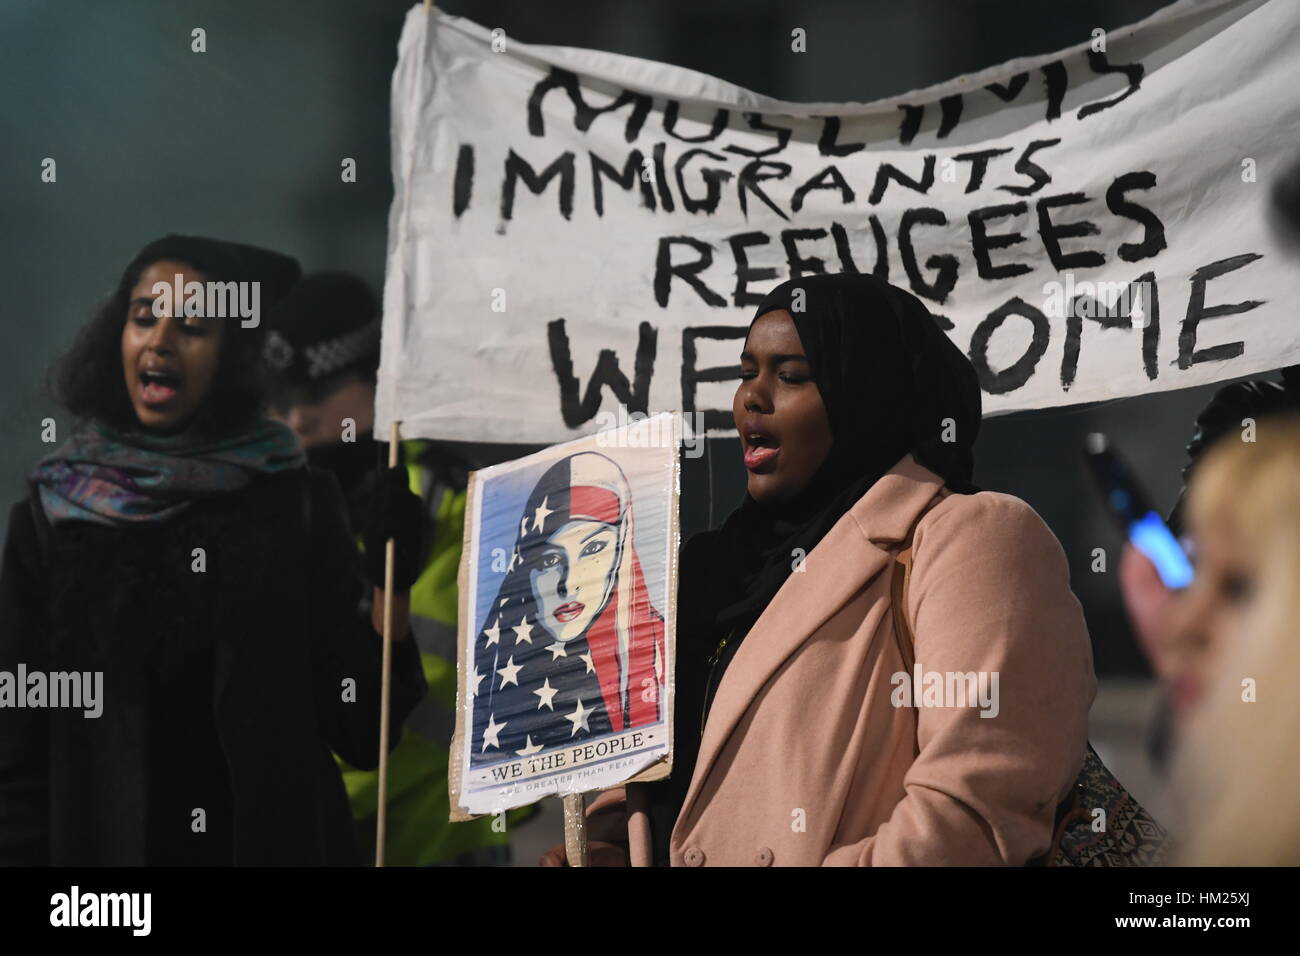 Les gens démontrer au cours d'une manifestation à Downing Street au centre de Londres contre le Président des Etats-Unis, Donald Trump est controversée interdiction de voyager sur les réfugiés et les personnes de sept-principalement des pays musulmans. Banque D'Images